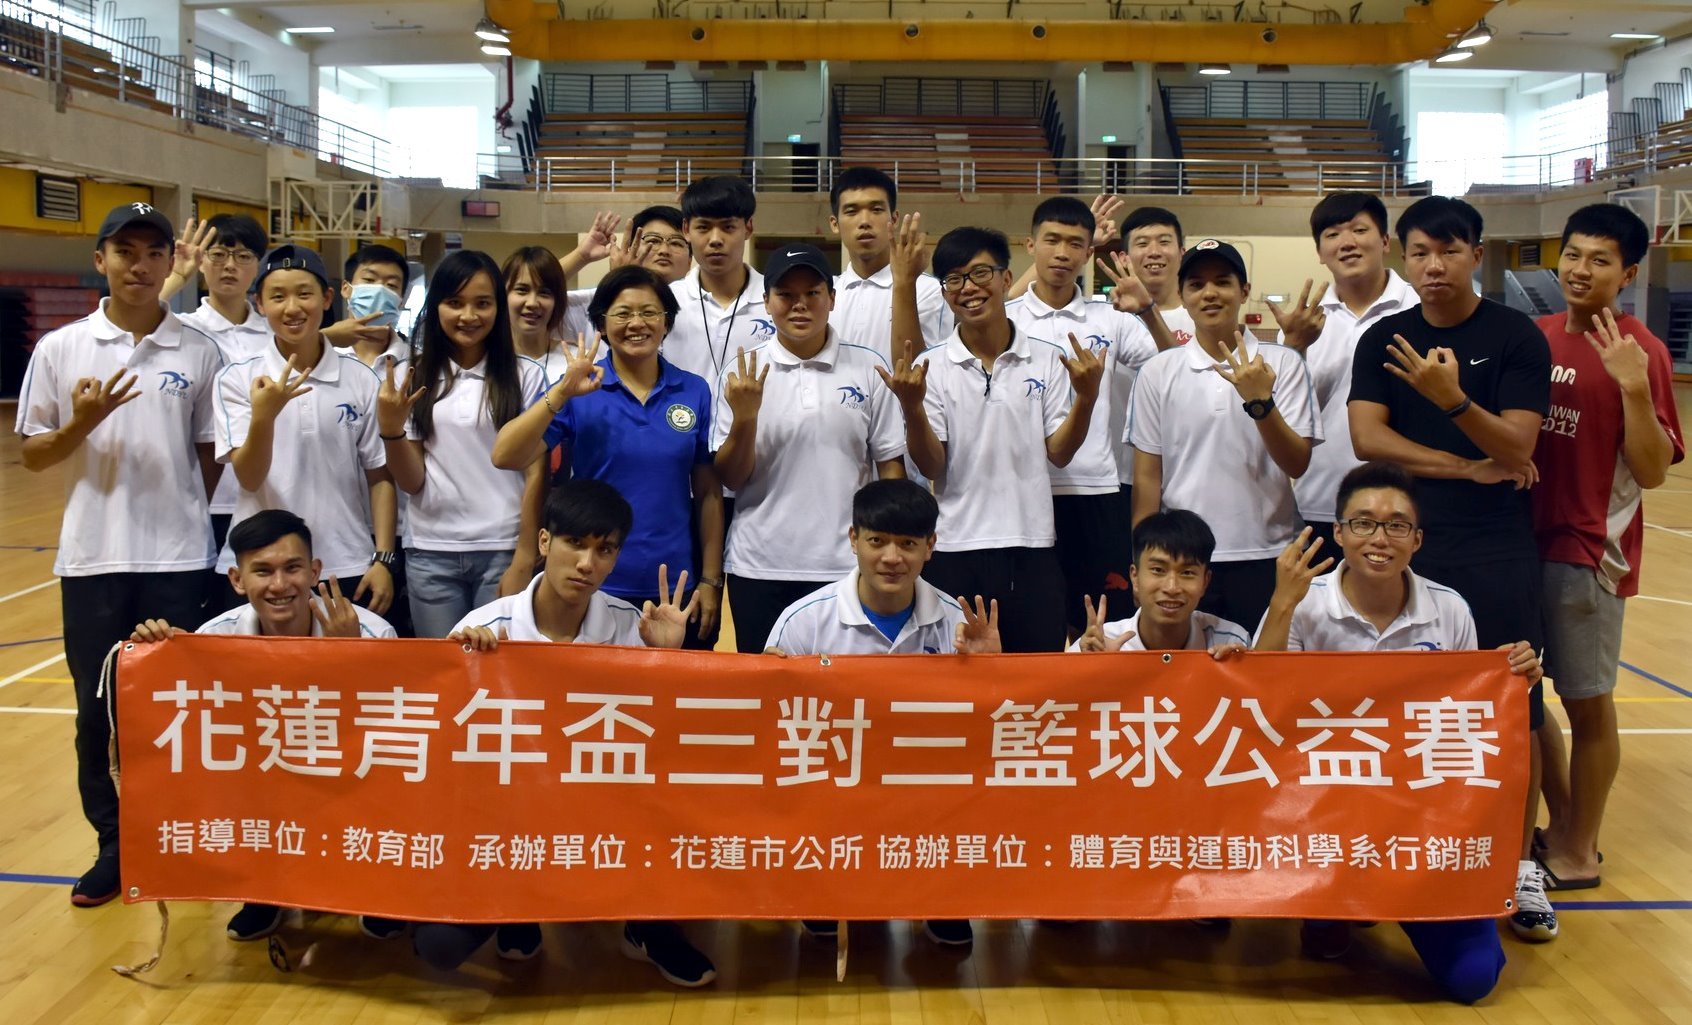 公益賽主辦東華體育與運動科學系三年級師生工作團隊